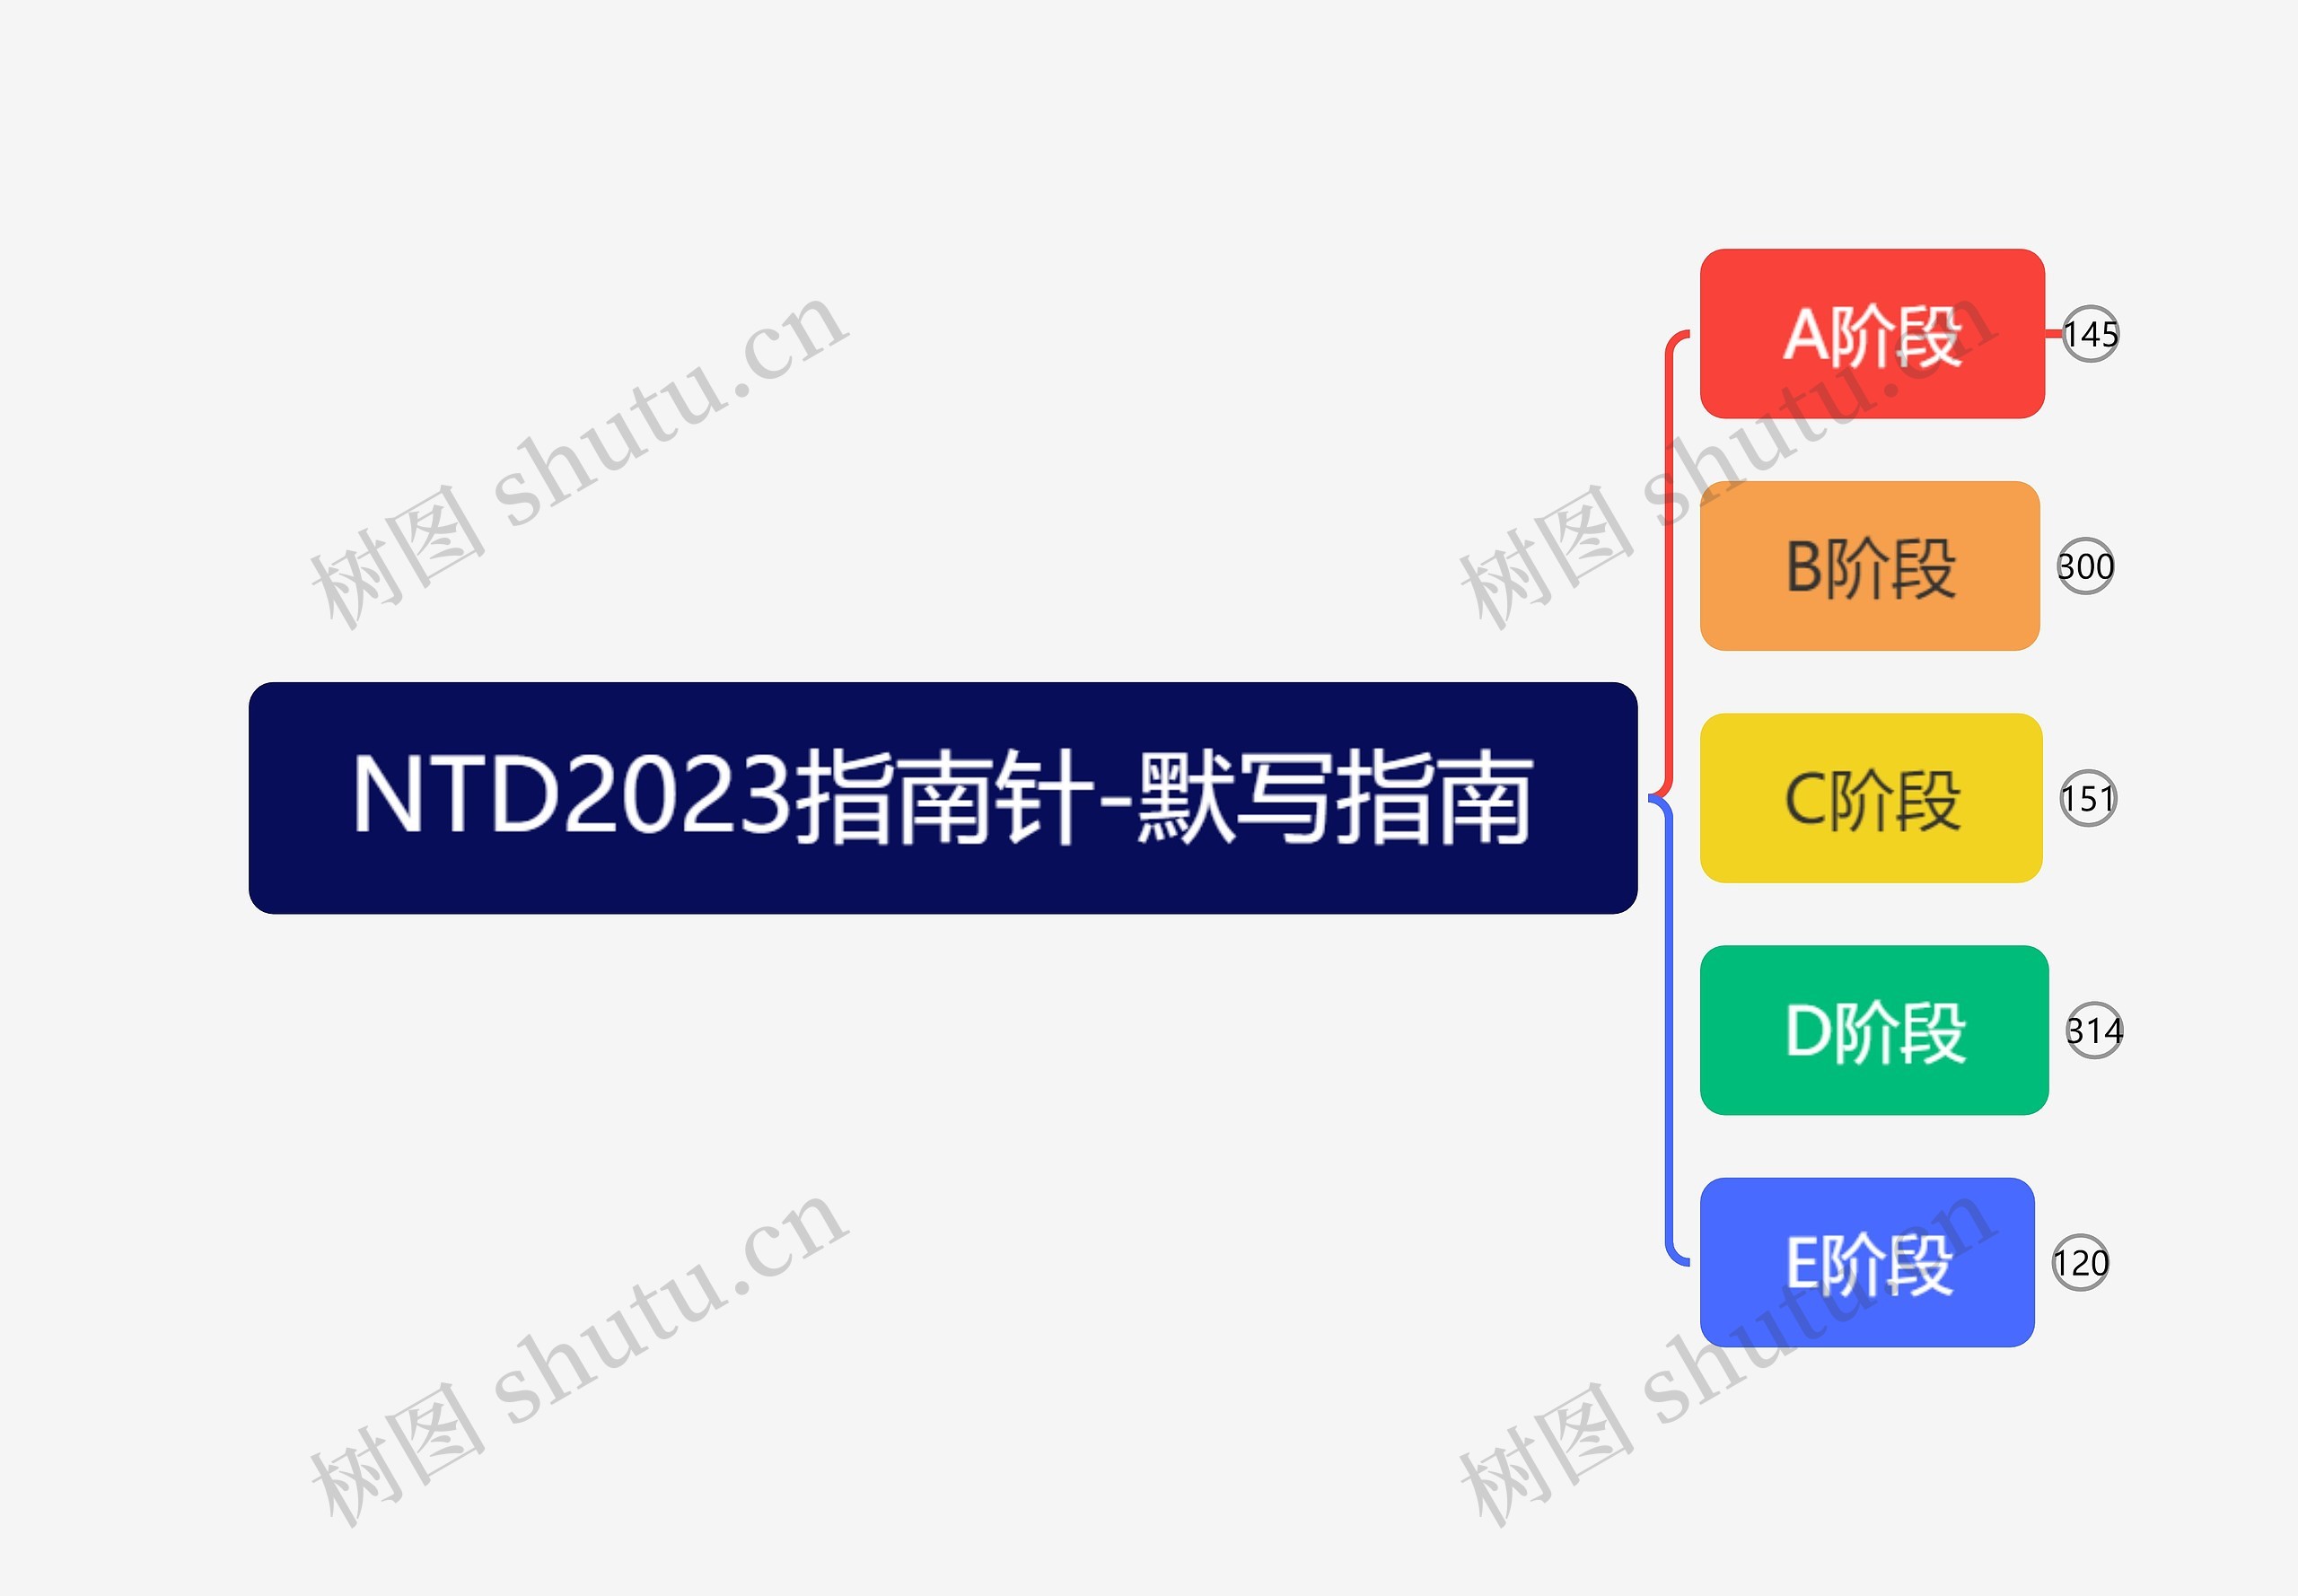 NTD2023指南针-默写指南-模式_副本思维导图